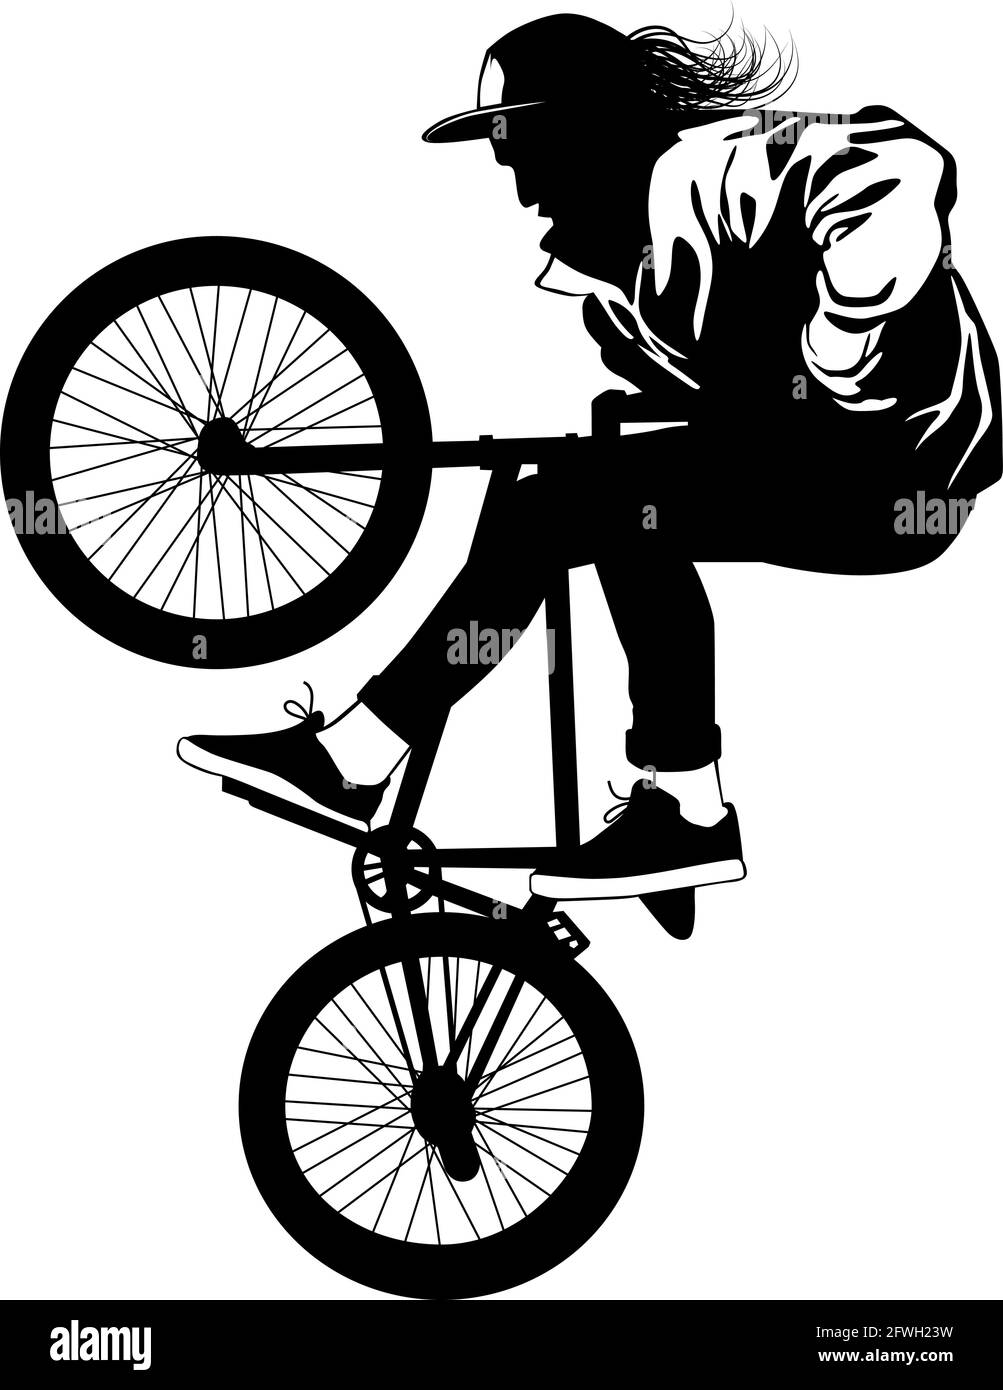 Silueta de un ciclista que realiza una acrobacia en bicicleta ilustración  vectorial Imagen Vector de stock - Alamy